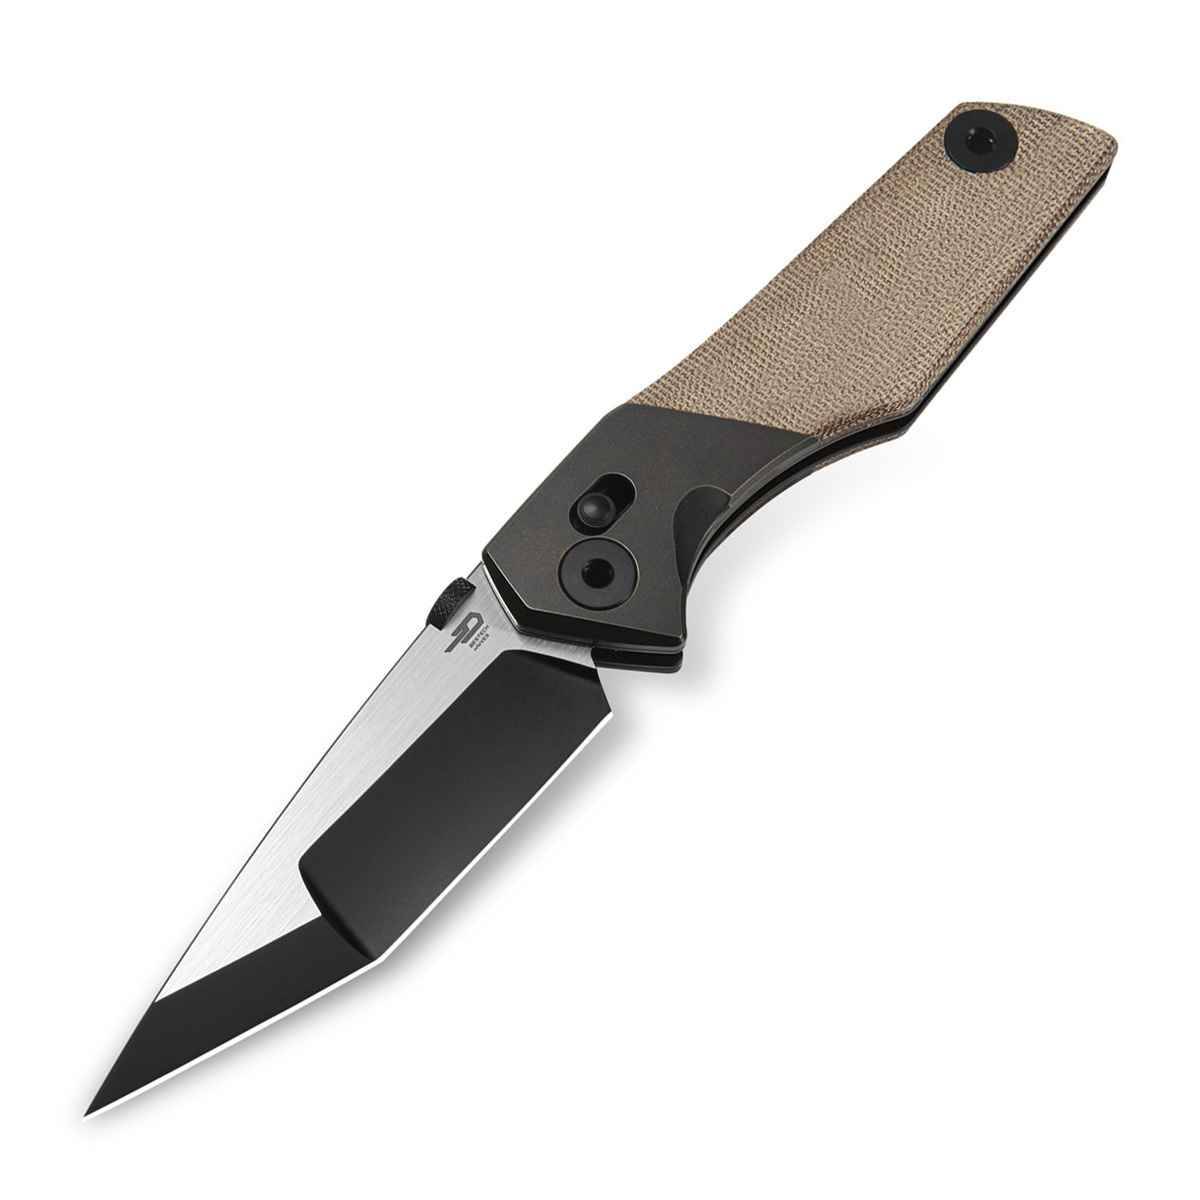 Складной нож Bestech Knives Cetus, сталь M390, рукоять микарта, бежевый